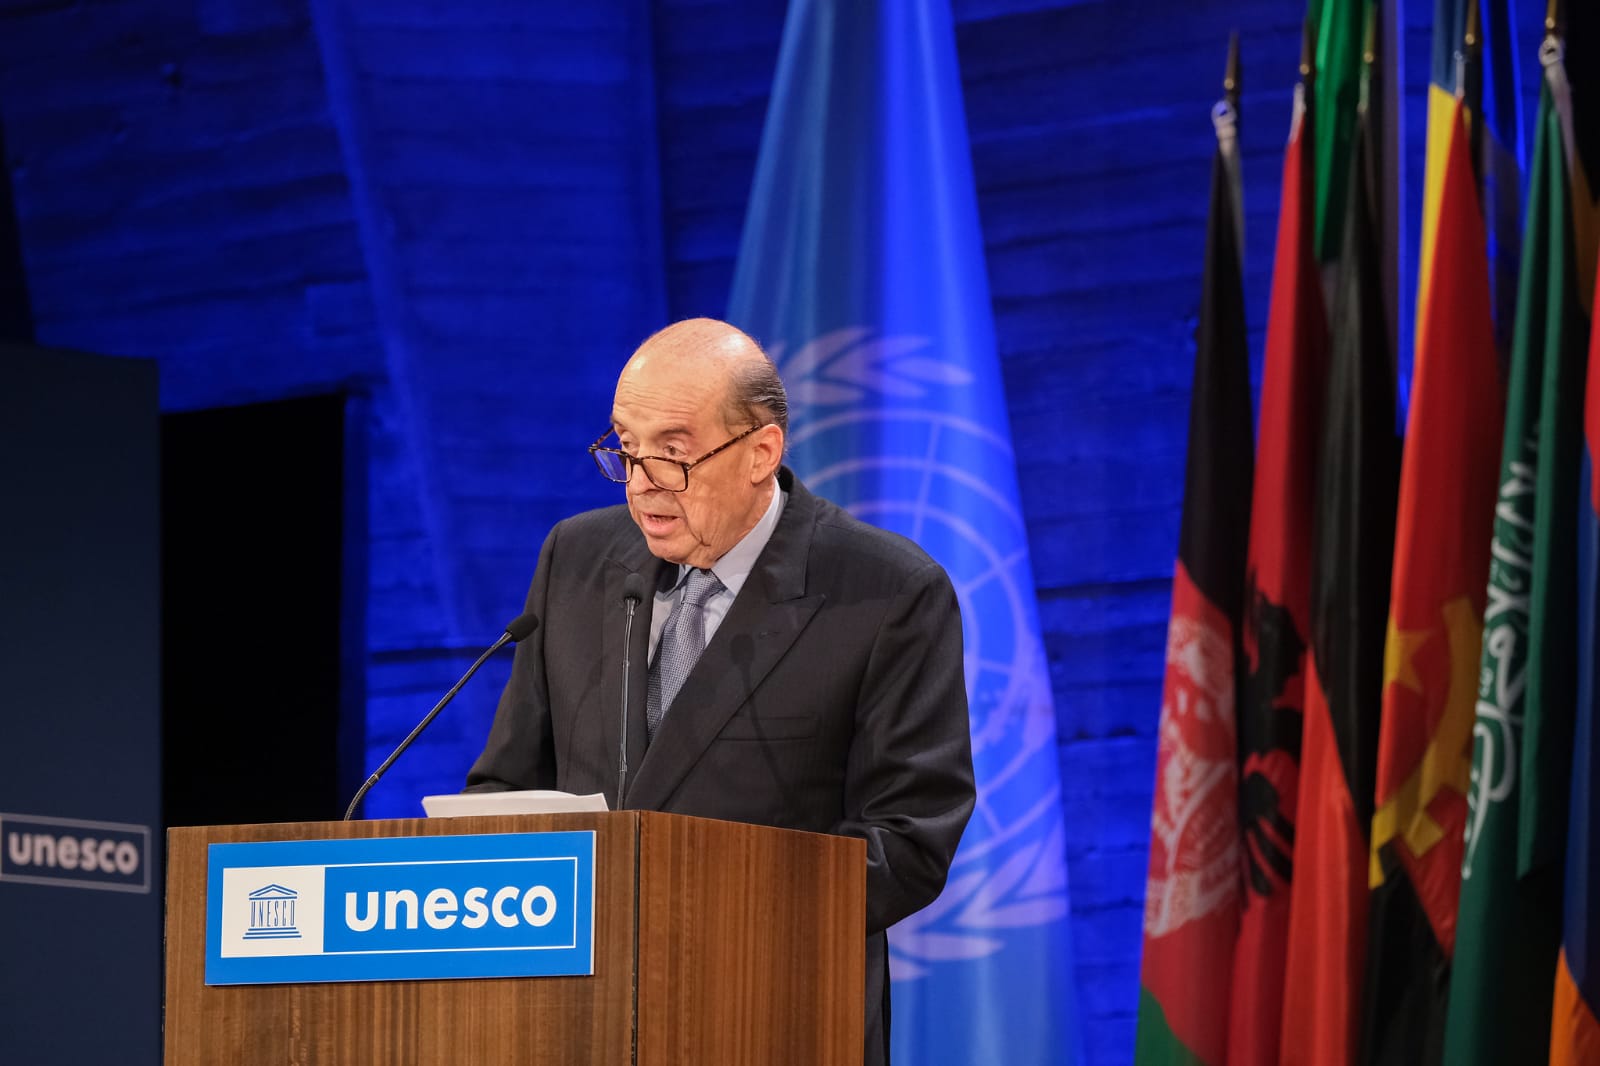 Discurso del canciller Álvaro Leyva Durán en la Conferencia General de la UNESCO